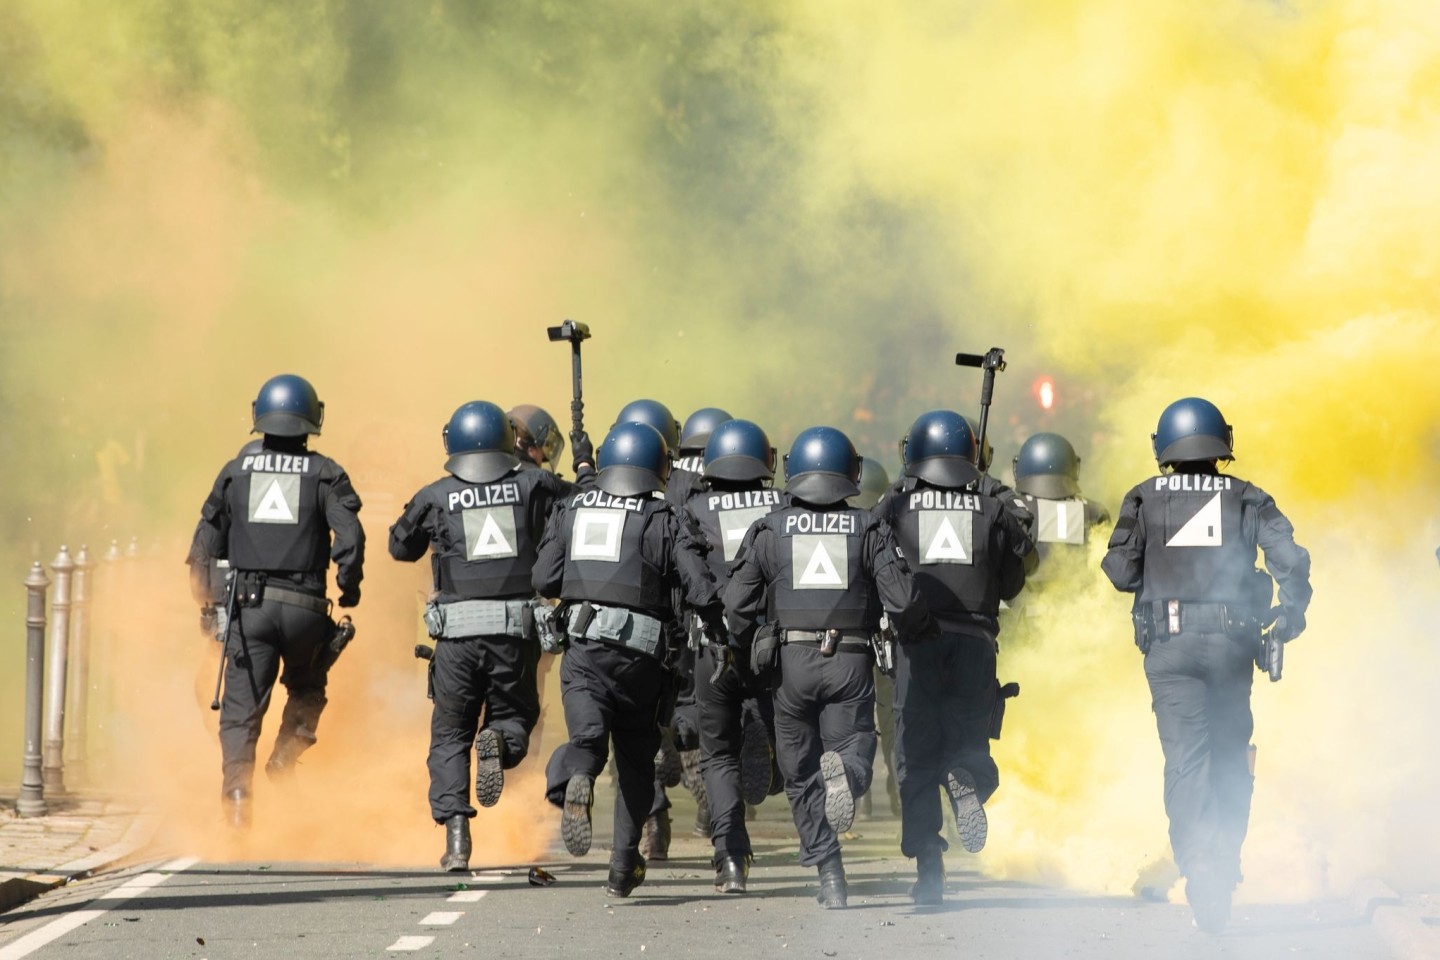 Bei Demonstrationen, Fußballspielen oder Routineeinsätzen kommt es immer wieder zu Angriffen gegen Polizisten oder Widerstandshandlungen. Die Zahl der Vorfälle ist auch 2020 gestiegen.